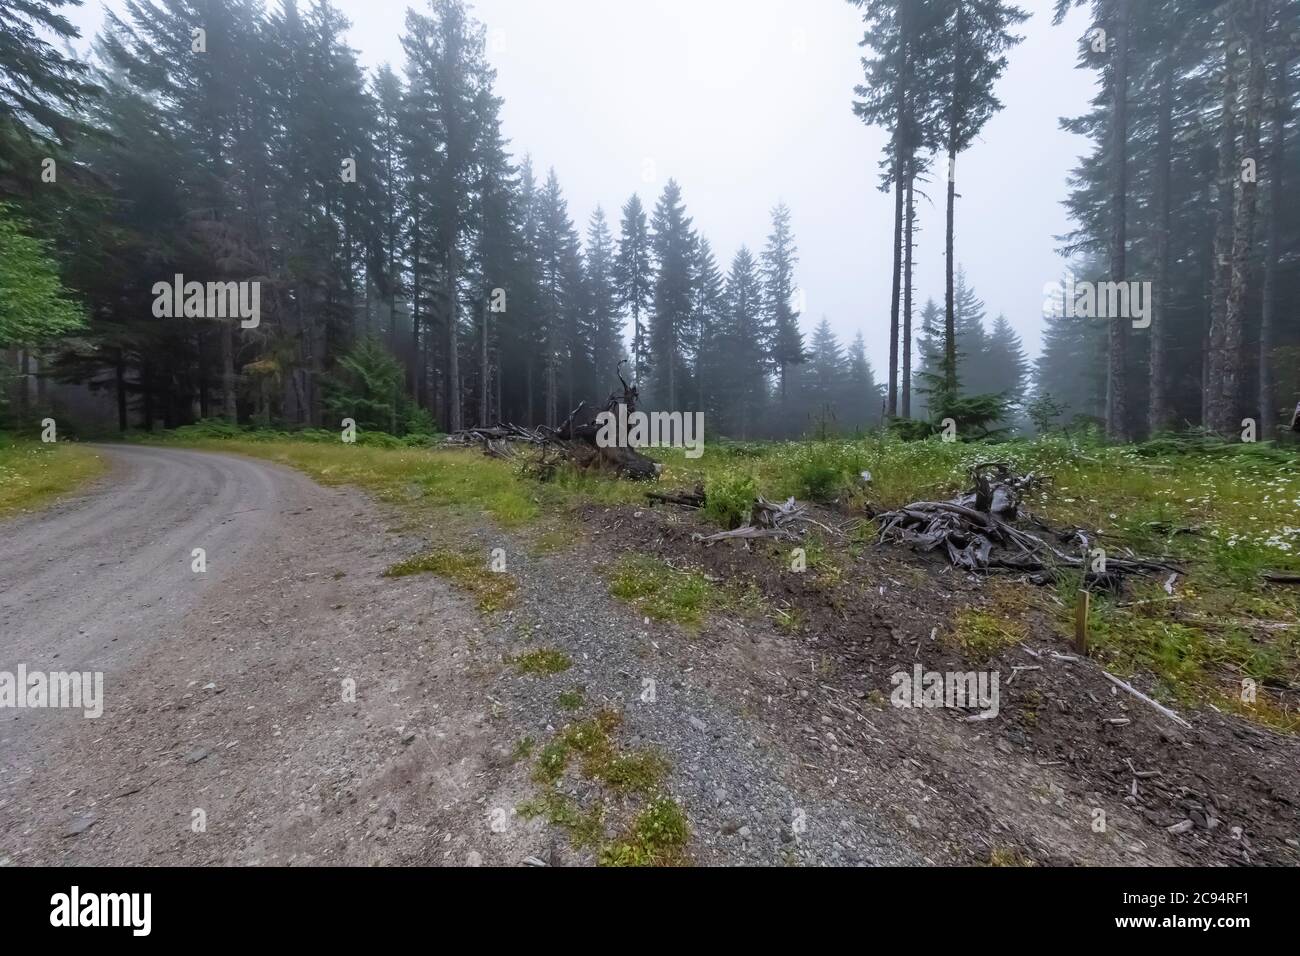 Una carretera forestal accede a desembarques de tala como esta, permitiendo que los camiones madereros recojan troncos, Gifford Pinchot National Forest, Washington State, EE.UU Foto de stock